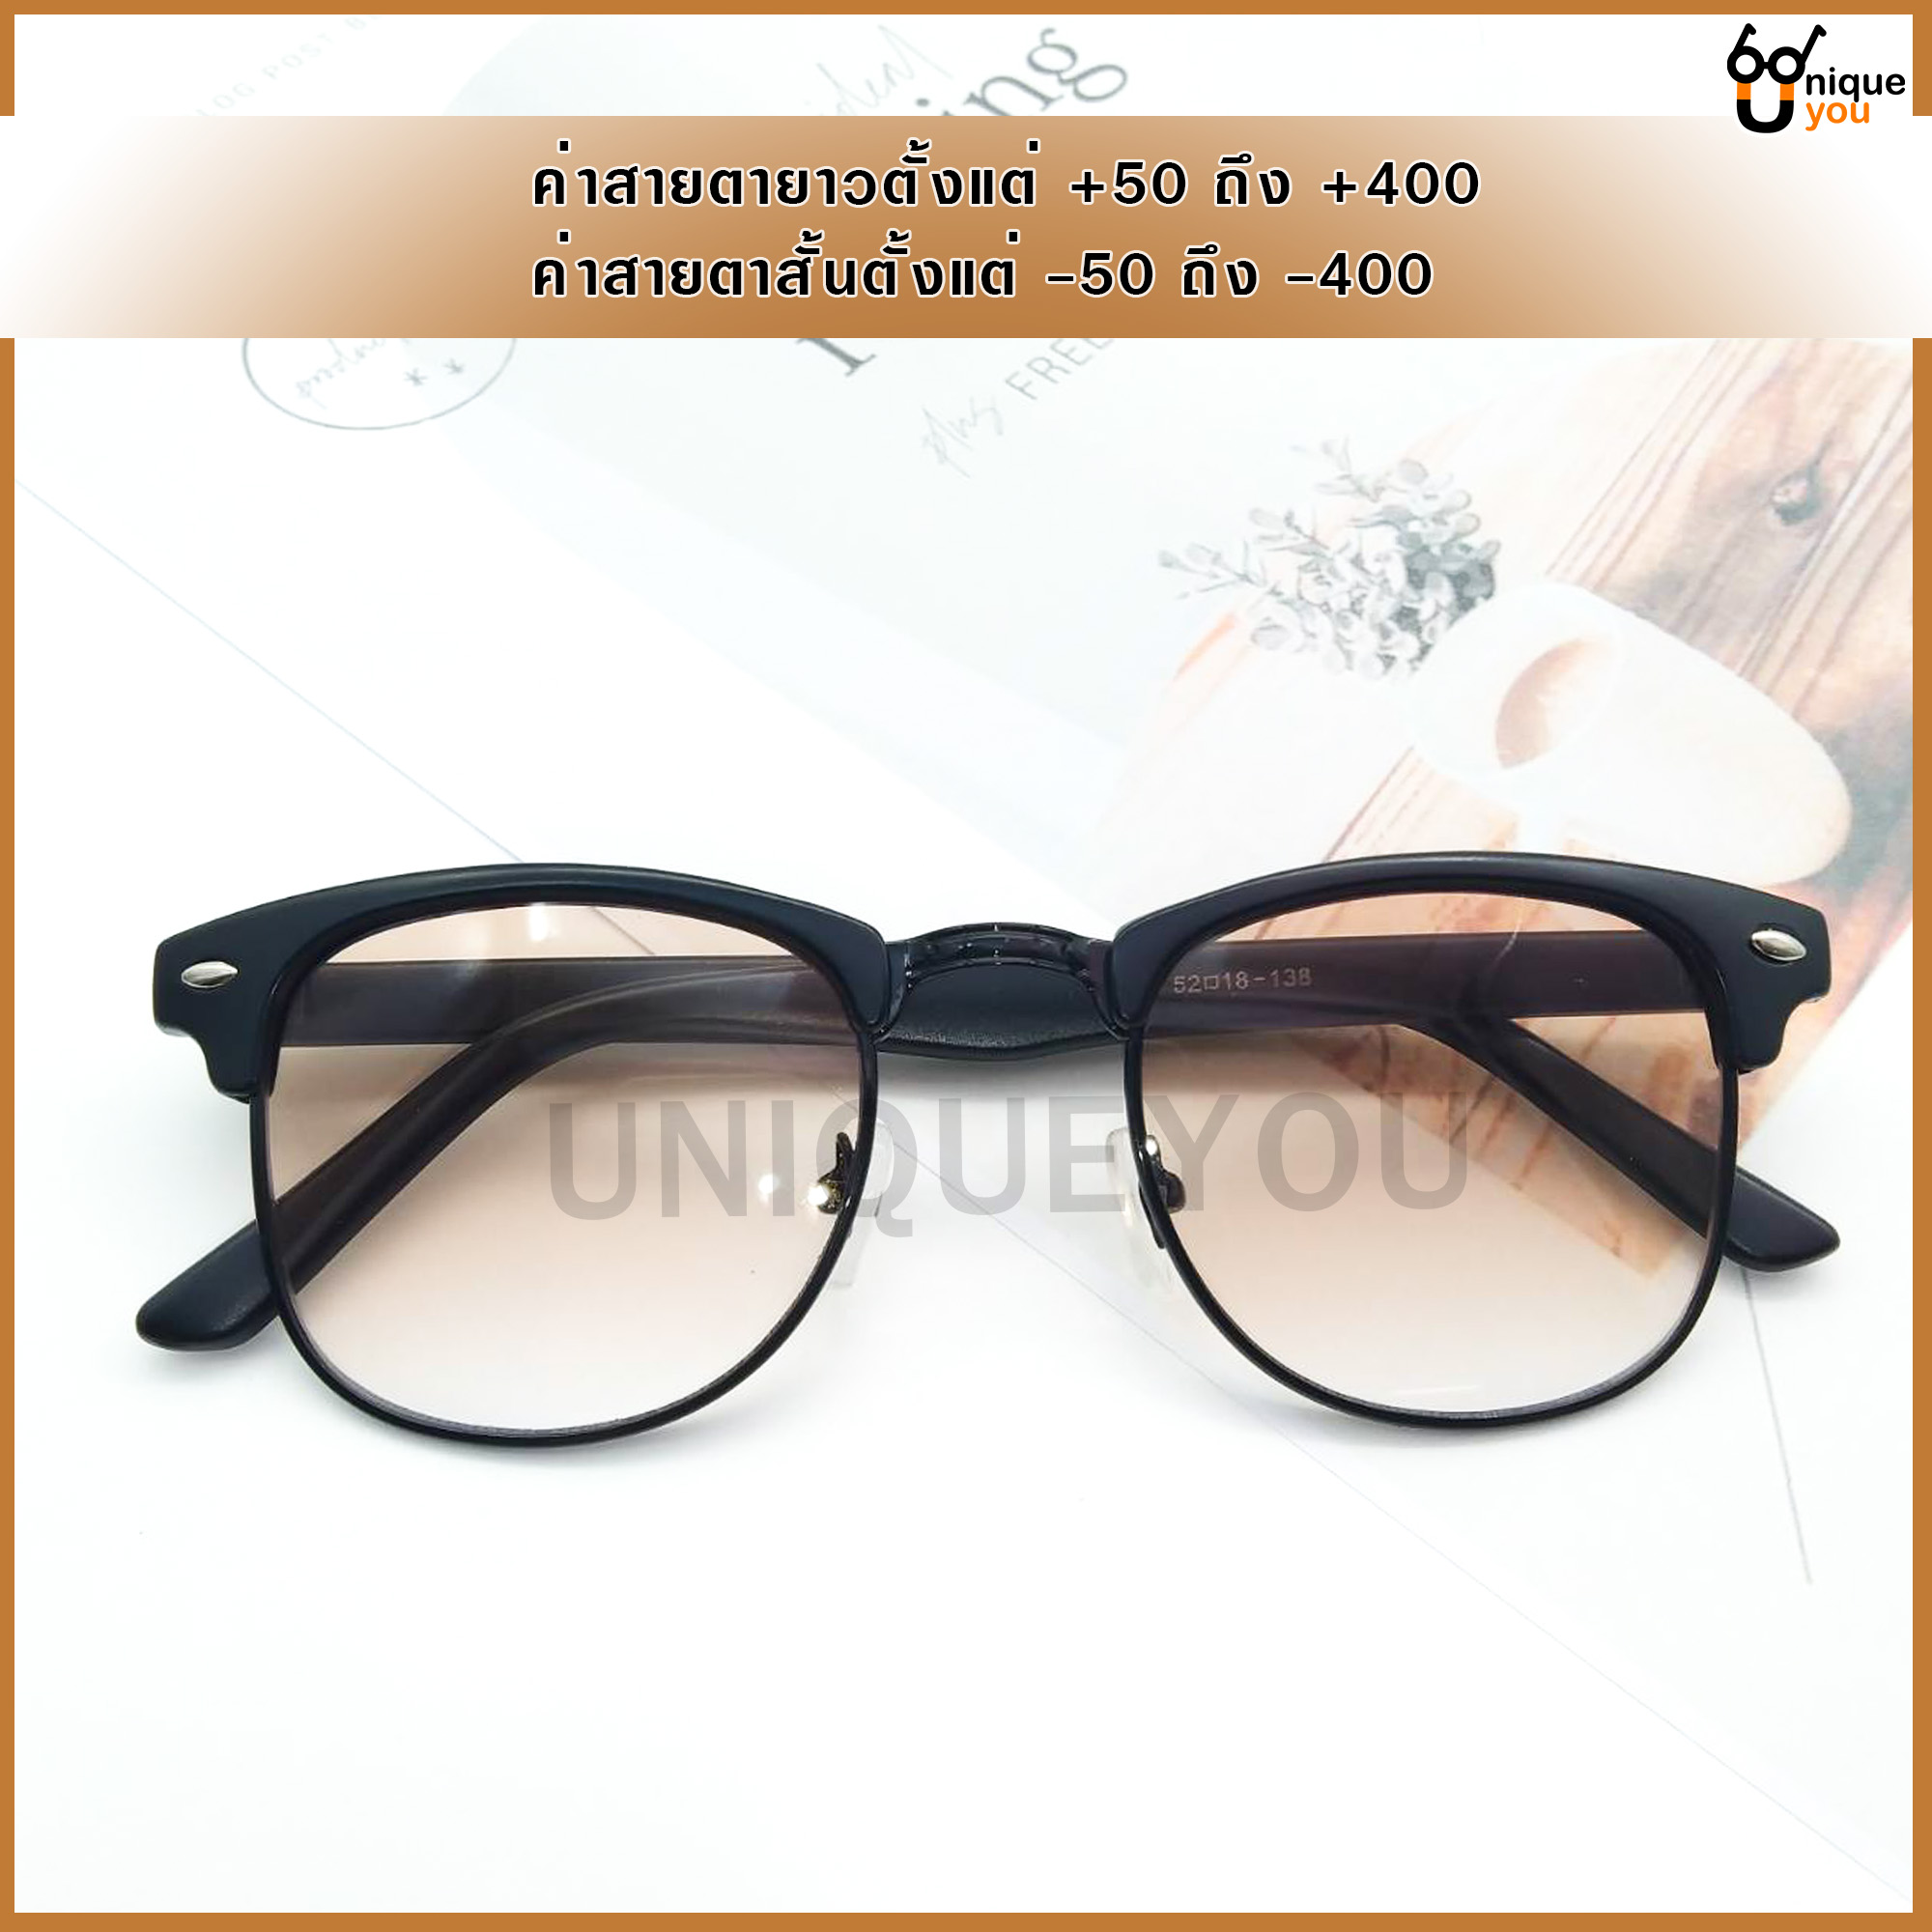 ข้อมูลเพิ่มเติมของ Uniq แว่นสายตายาว แว่นสายตาสั้น แว่นกันแดด แว่นสายตาพร้อมกันแดด แว่นกันแดด+เลนส์สายตา เลนส์สีชา